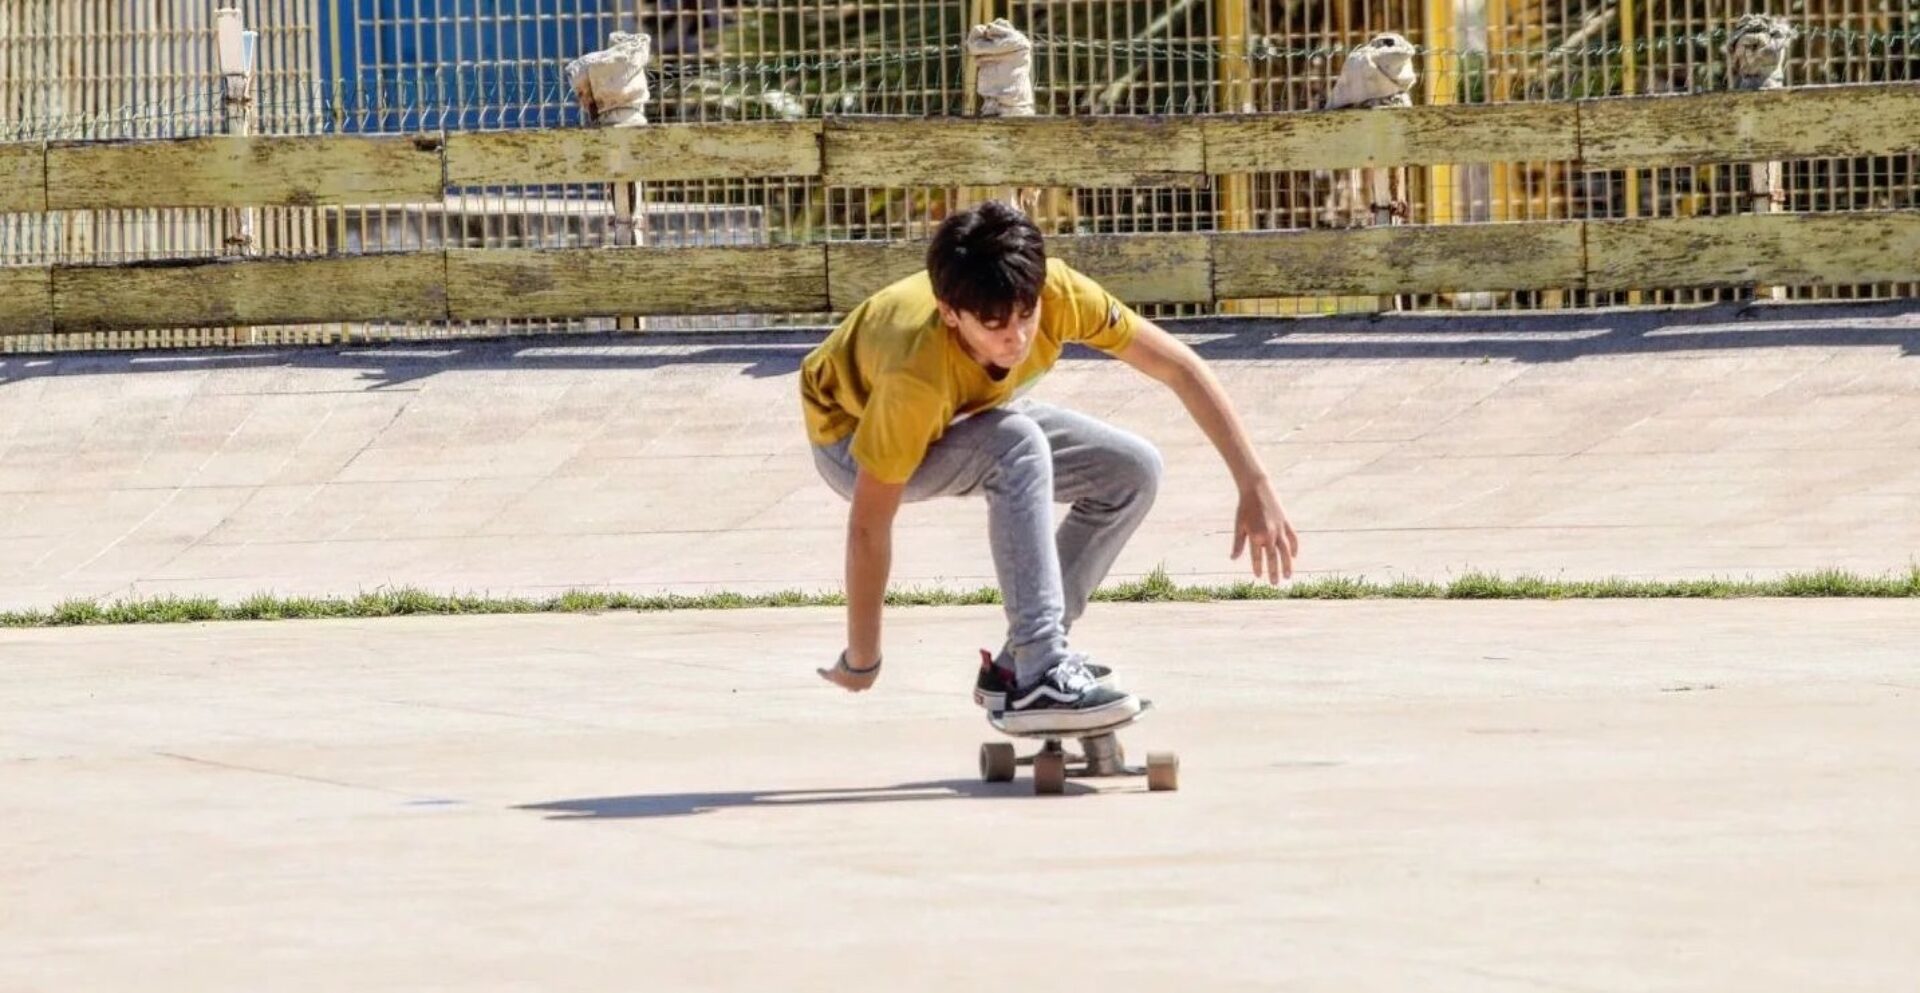 Skateboard lessons Sicily